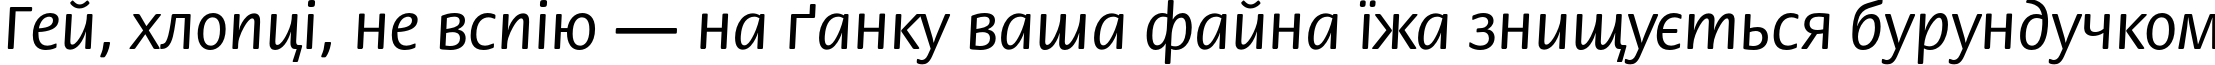 Пример написания шрифтом FloraC текста на украинском